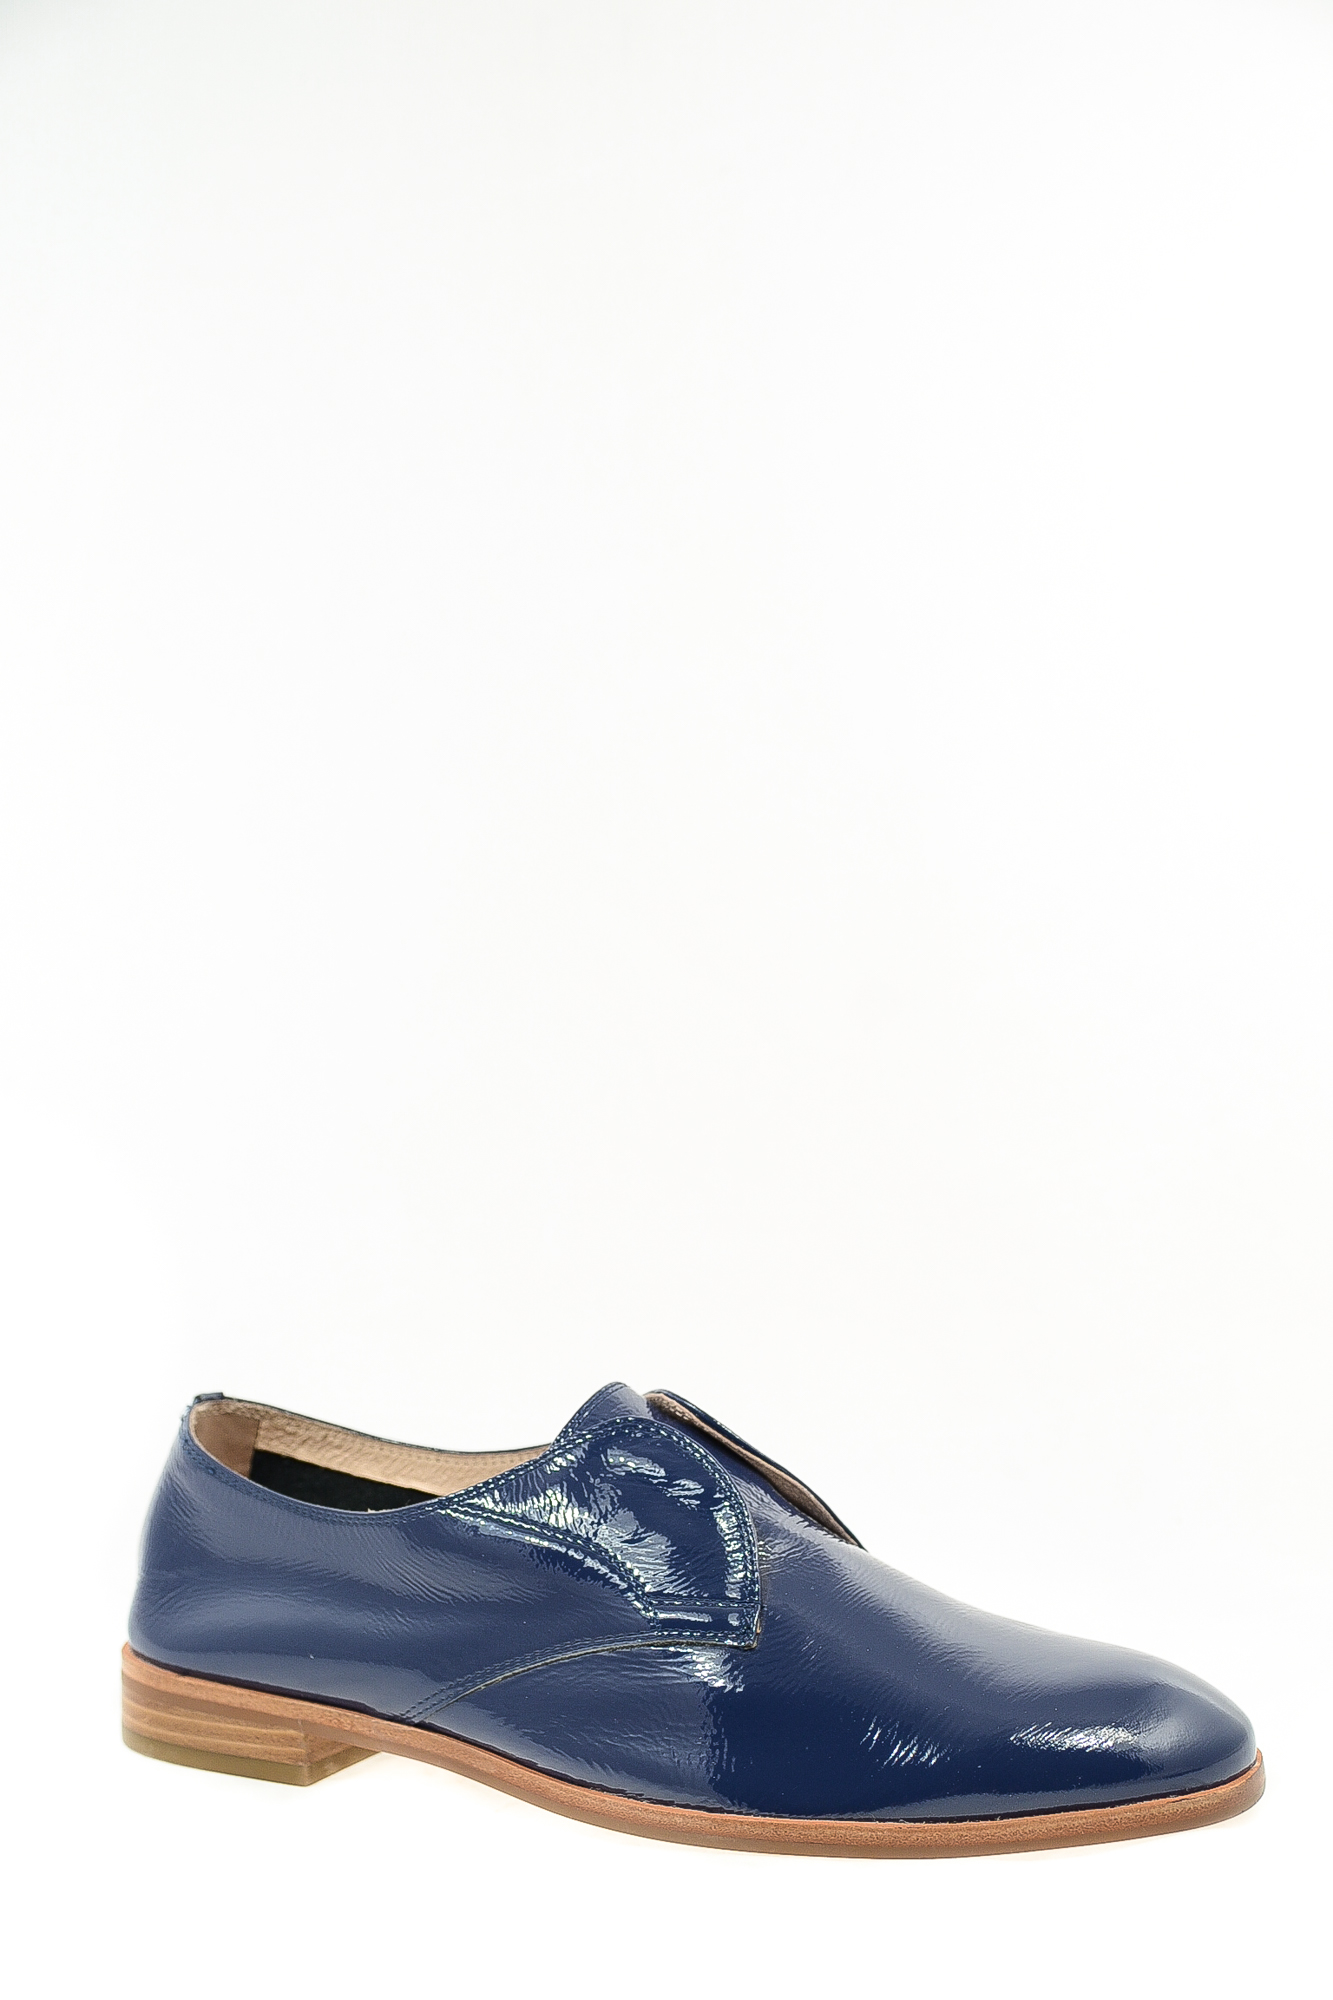 Туфли натуральный лак Melanes J668S-1-17 цвет синий.